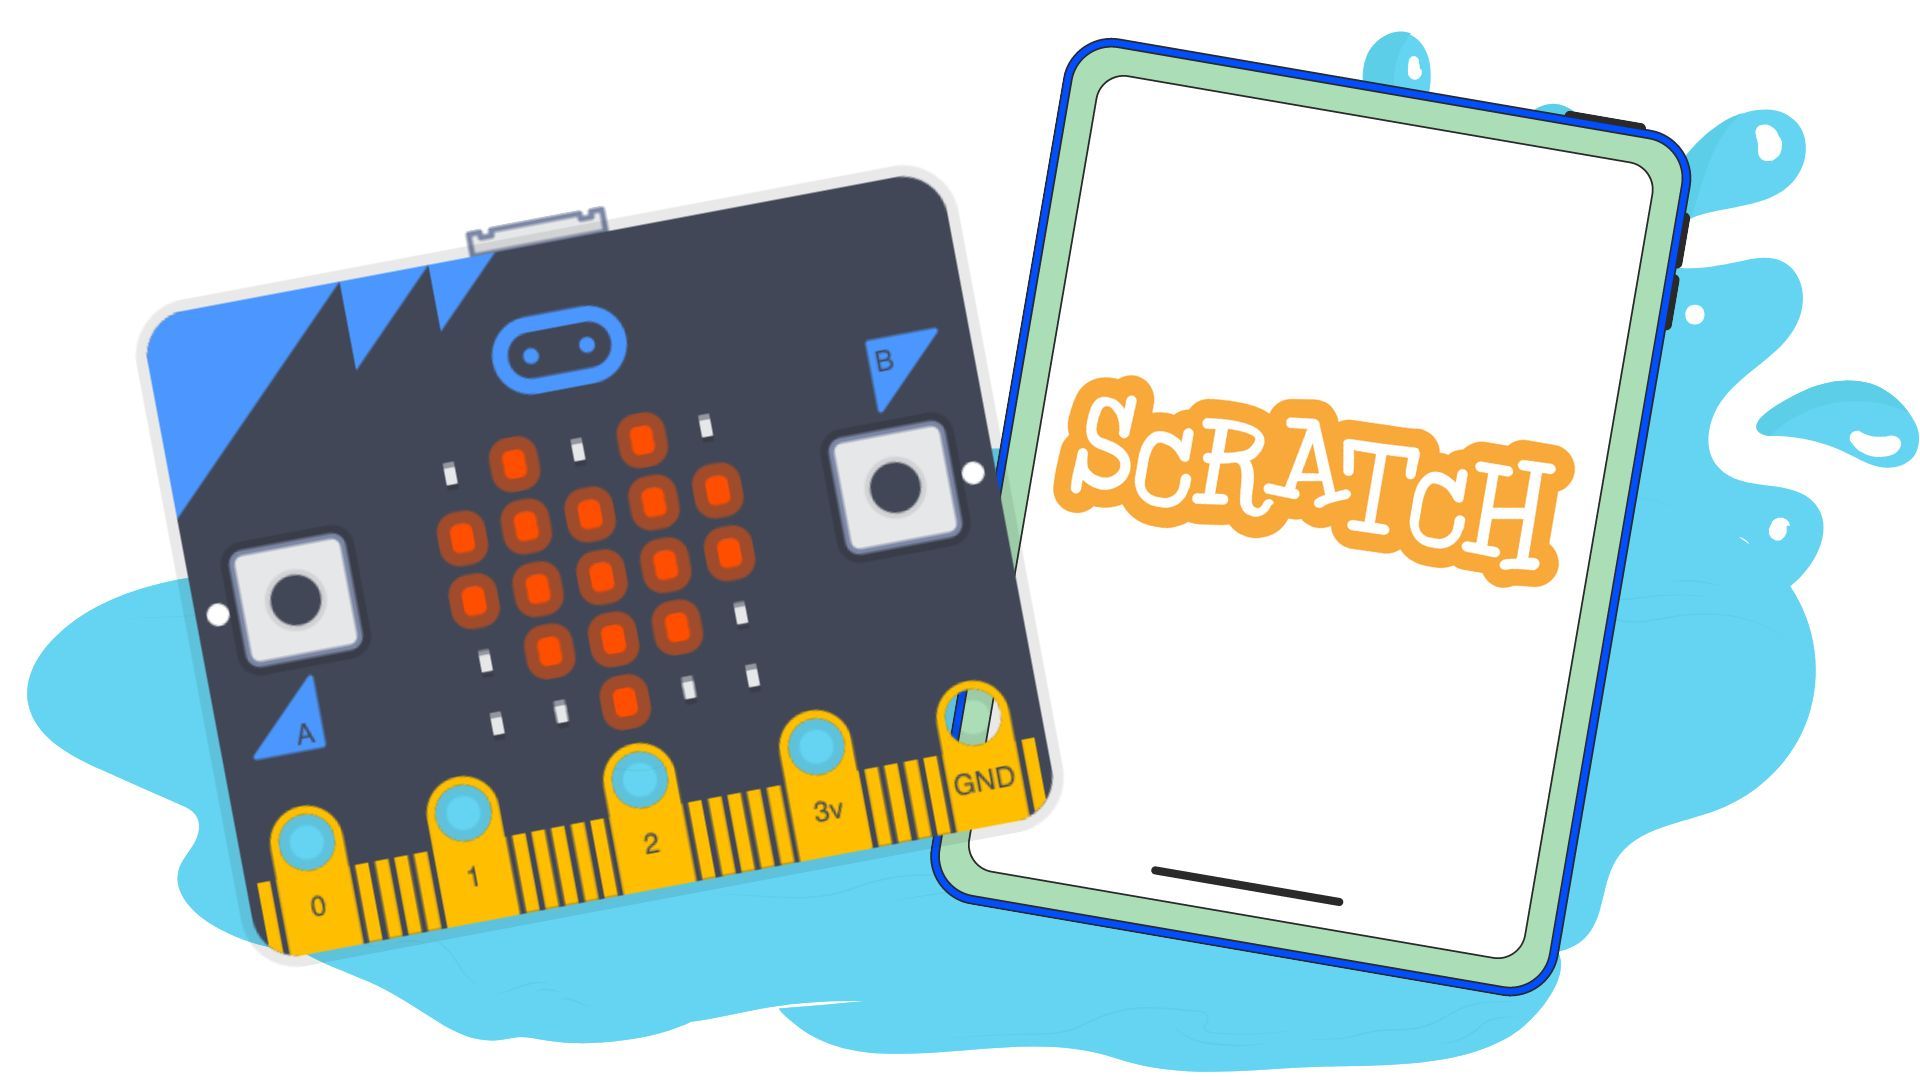 Scratch and Micro:bit